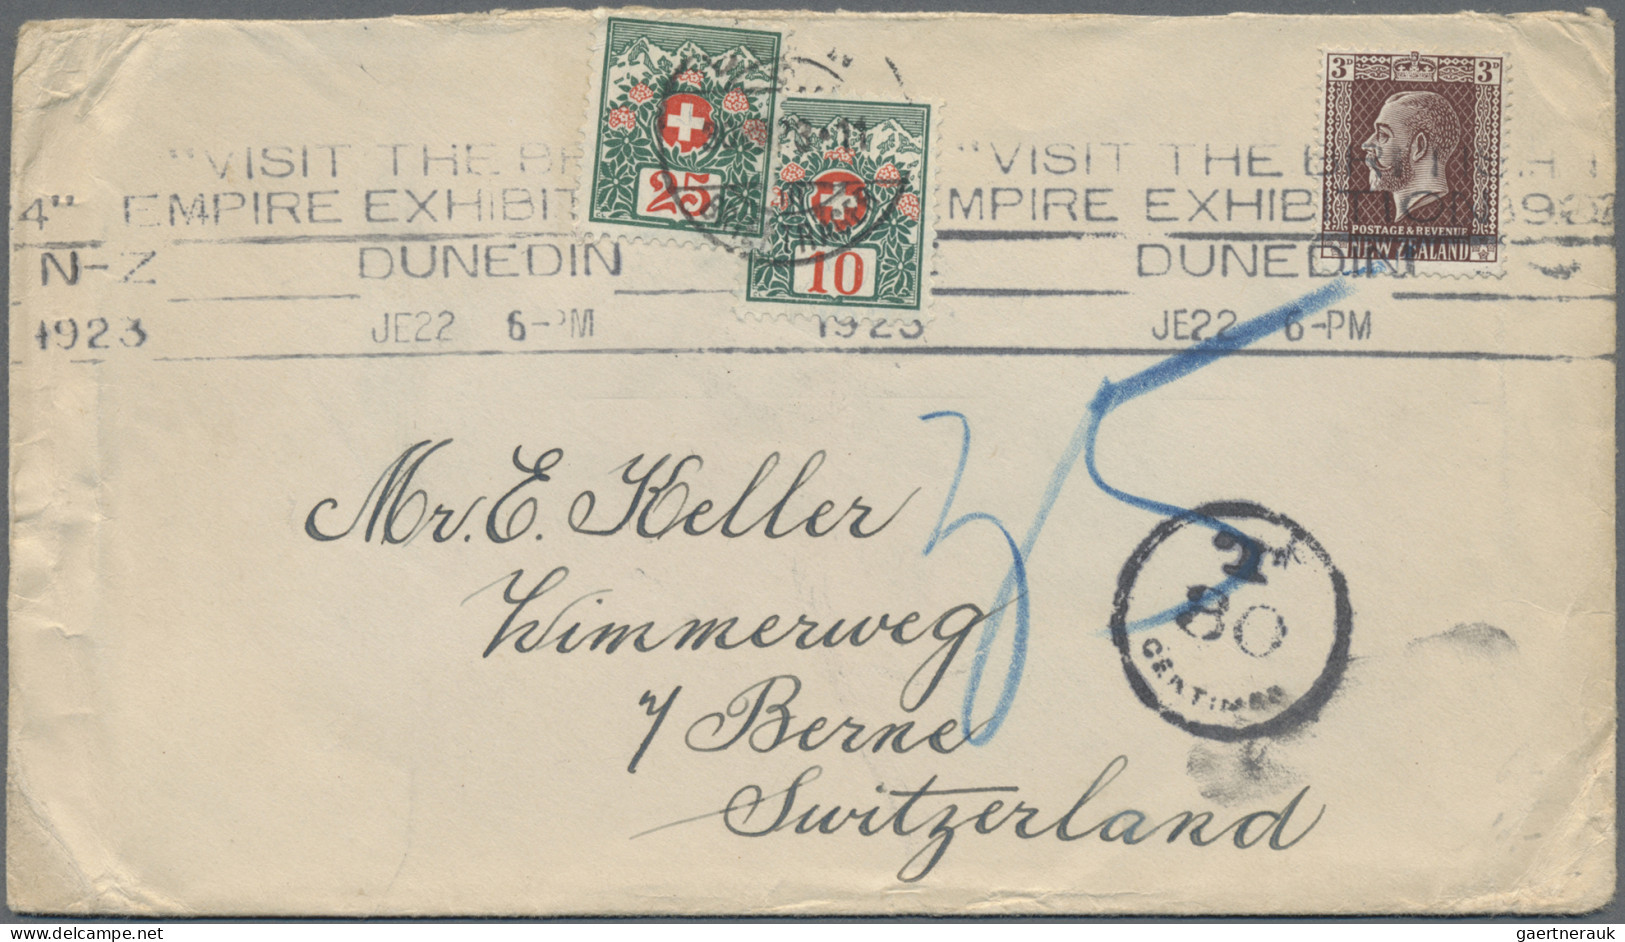 Schweiz - Portomarken: 1911/1924, Sammlung von 133 unzureichend frankierten Brie